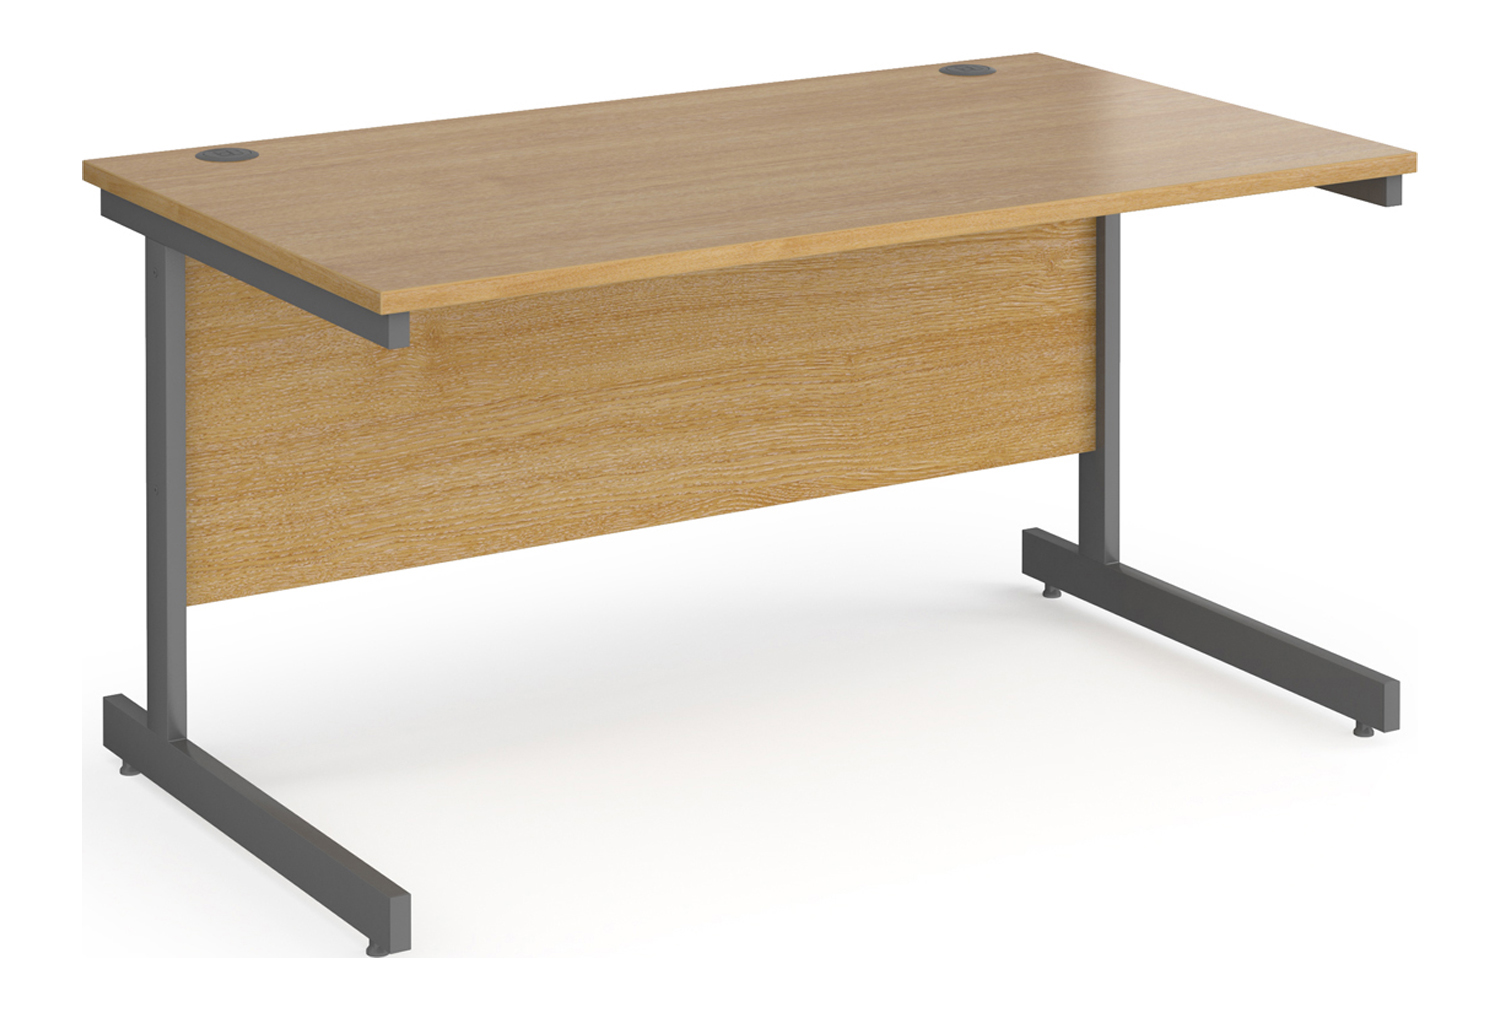 Value Line Classic+ Rectangular C-Leg Office Desk (Graphite Leg), 140wx80dx73h (cm), Oak, Express Delivery